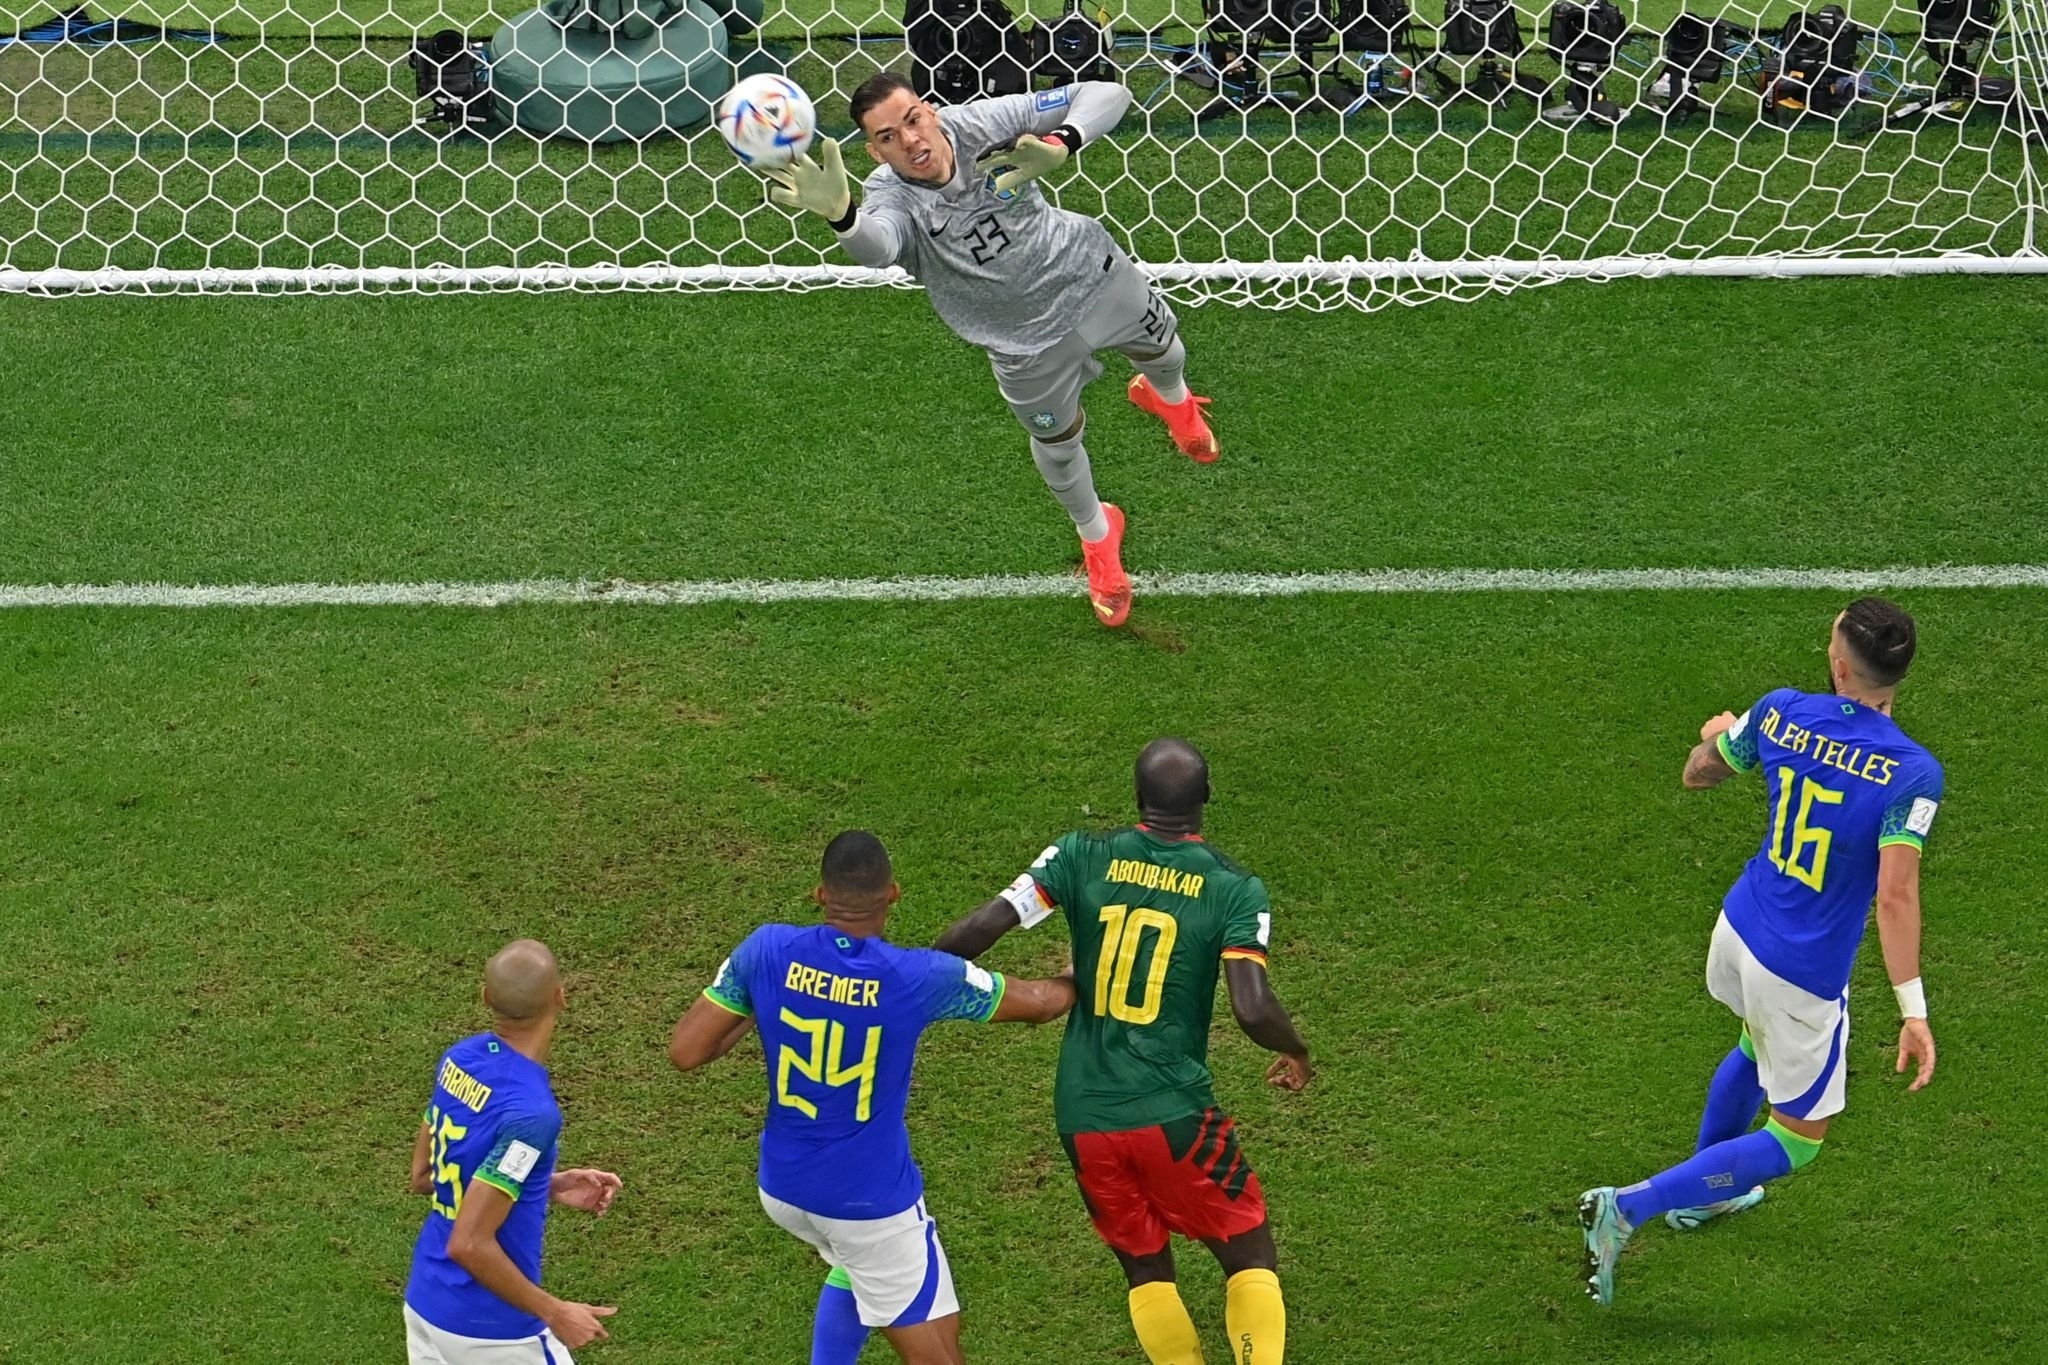 Brasil vs Maroko: Ederson TERPILIH atas kiper Liverpool Alisson melawan Maroko, kiper Manchester City ‘TERKEJUT’ lihat skuat Brasil